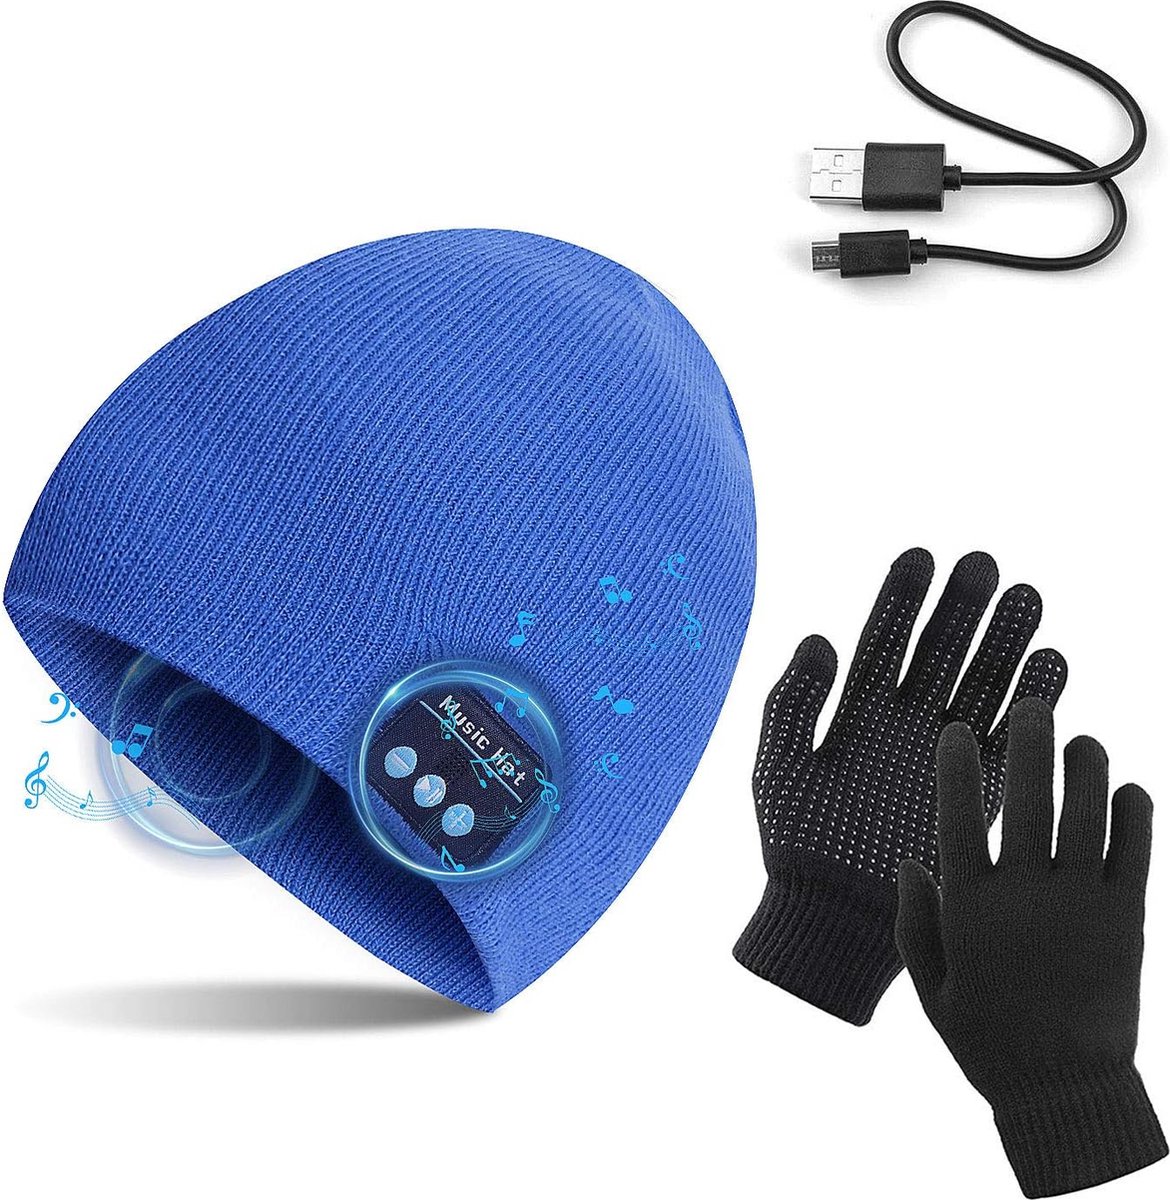 Blauw one size muts met touch handschoenen, winter warm gebreide draadloze Bluetooth V5.0 hoofdtelefoon muziek USB - super warm gevoerd met fleece laag - voor hardlopen, wandelen, fietsen, wintersport, reizen